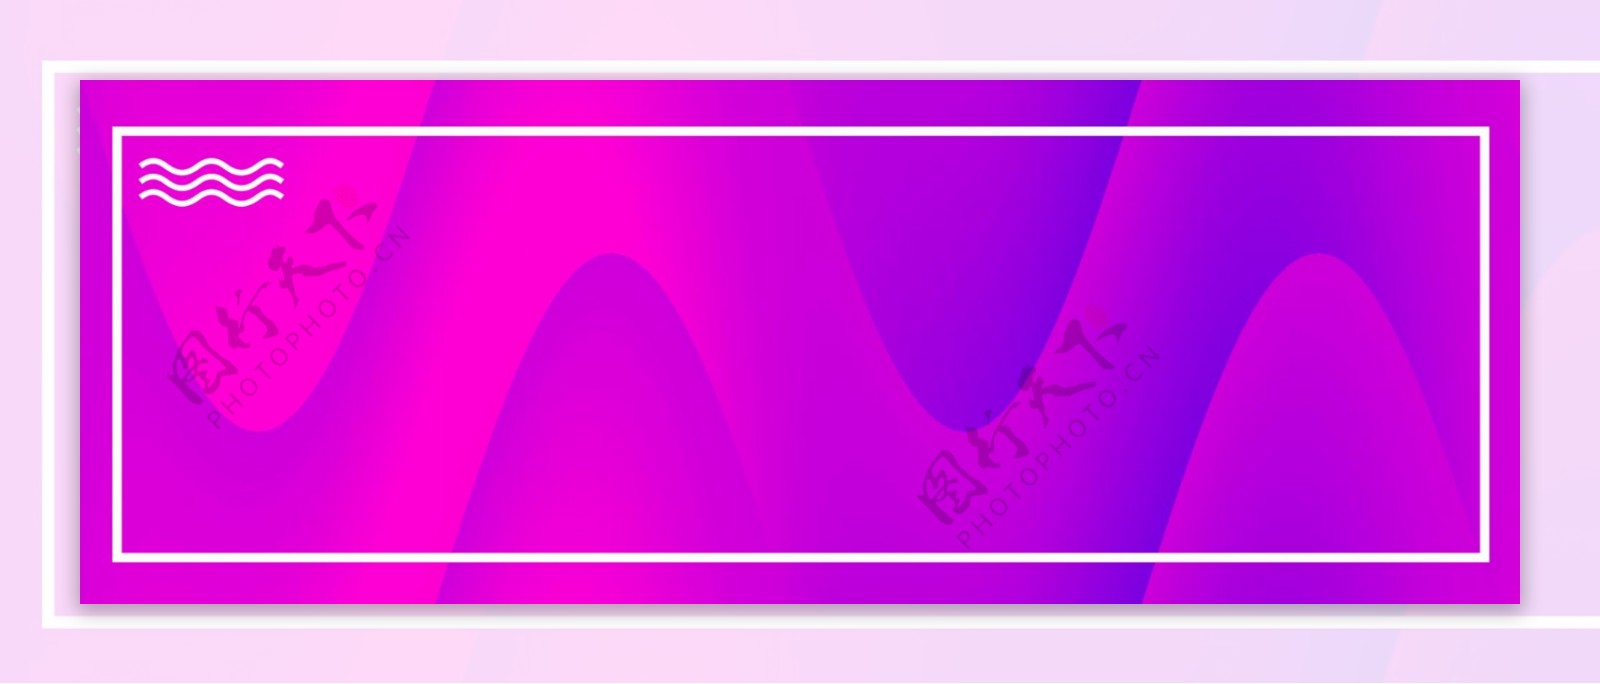 边框波浪条纹渐变色紫色蓝色活动促销背景